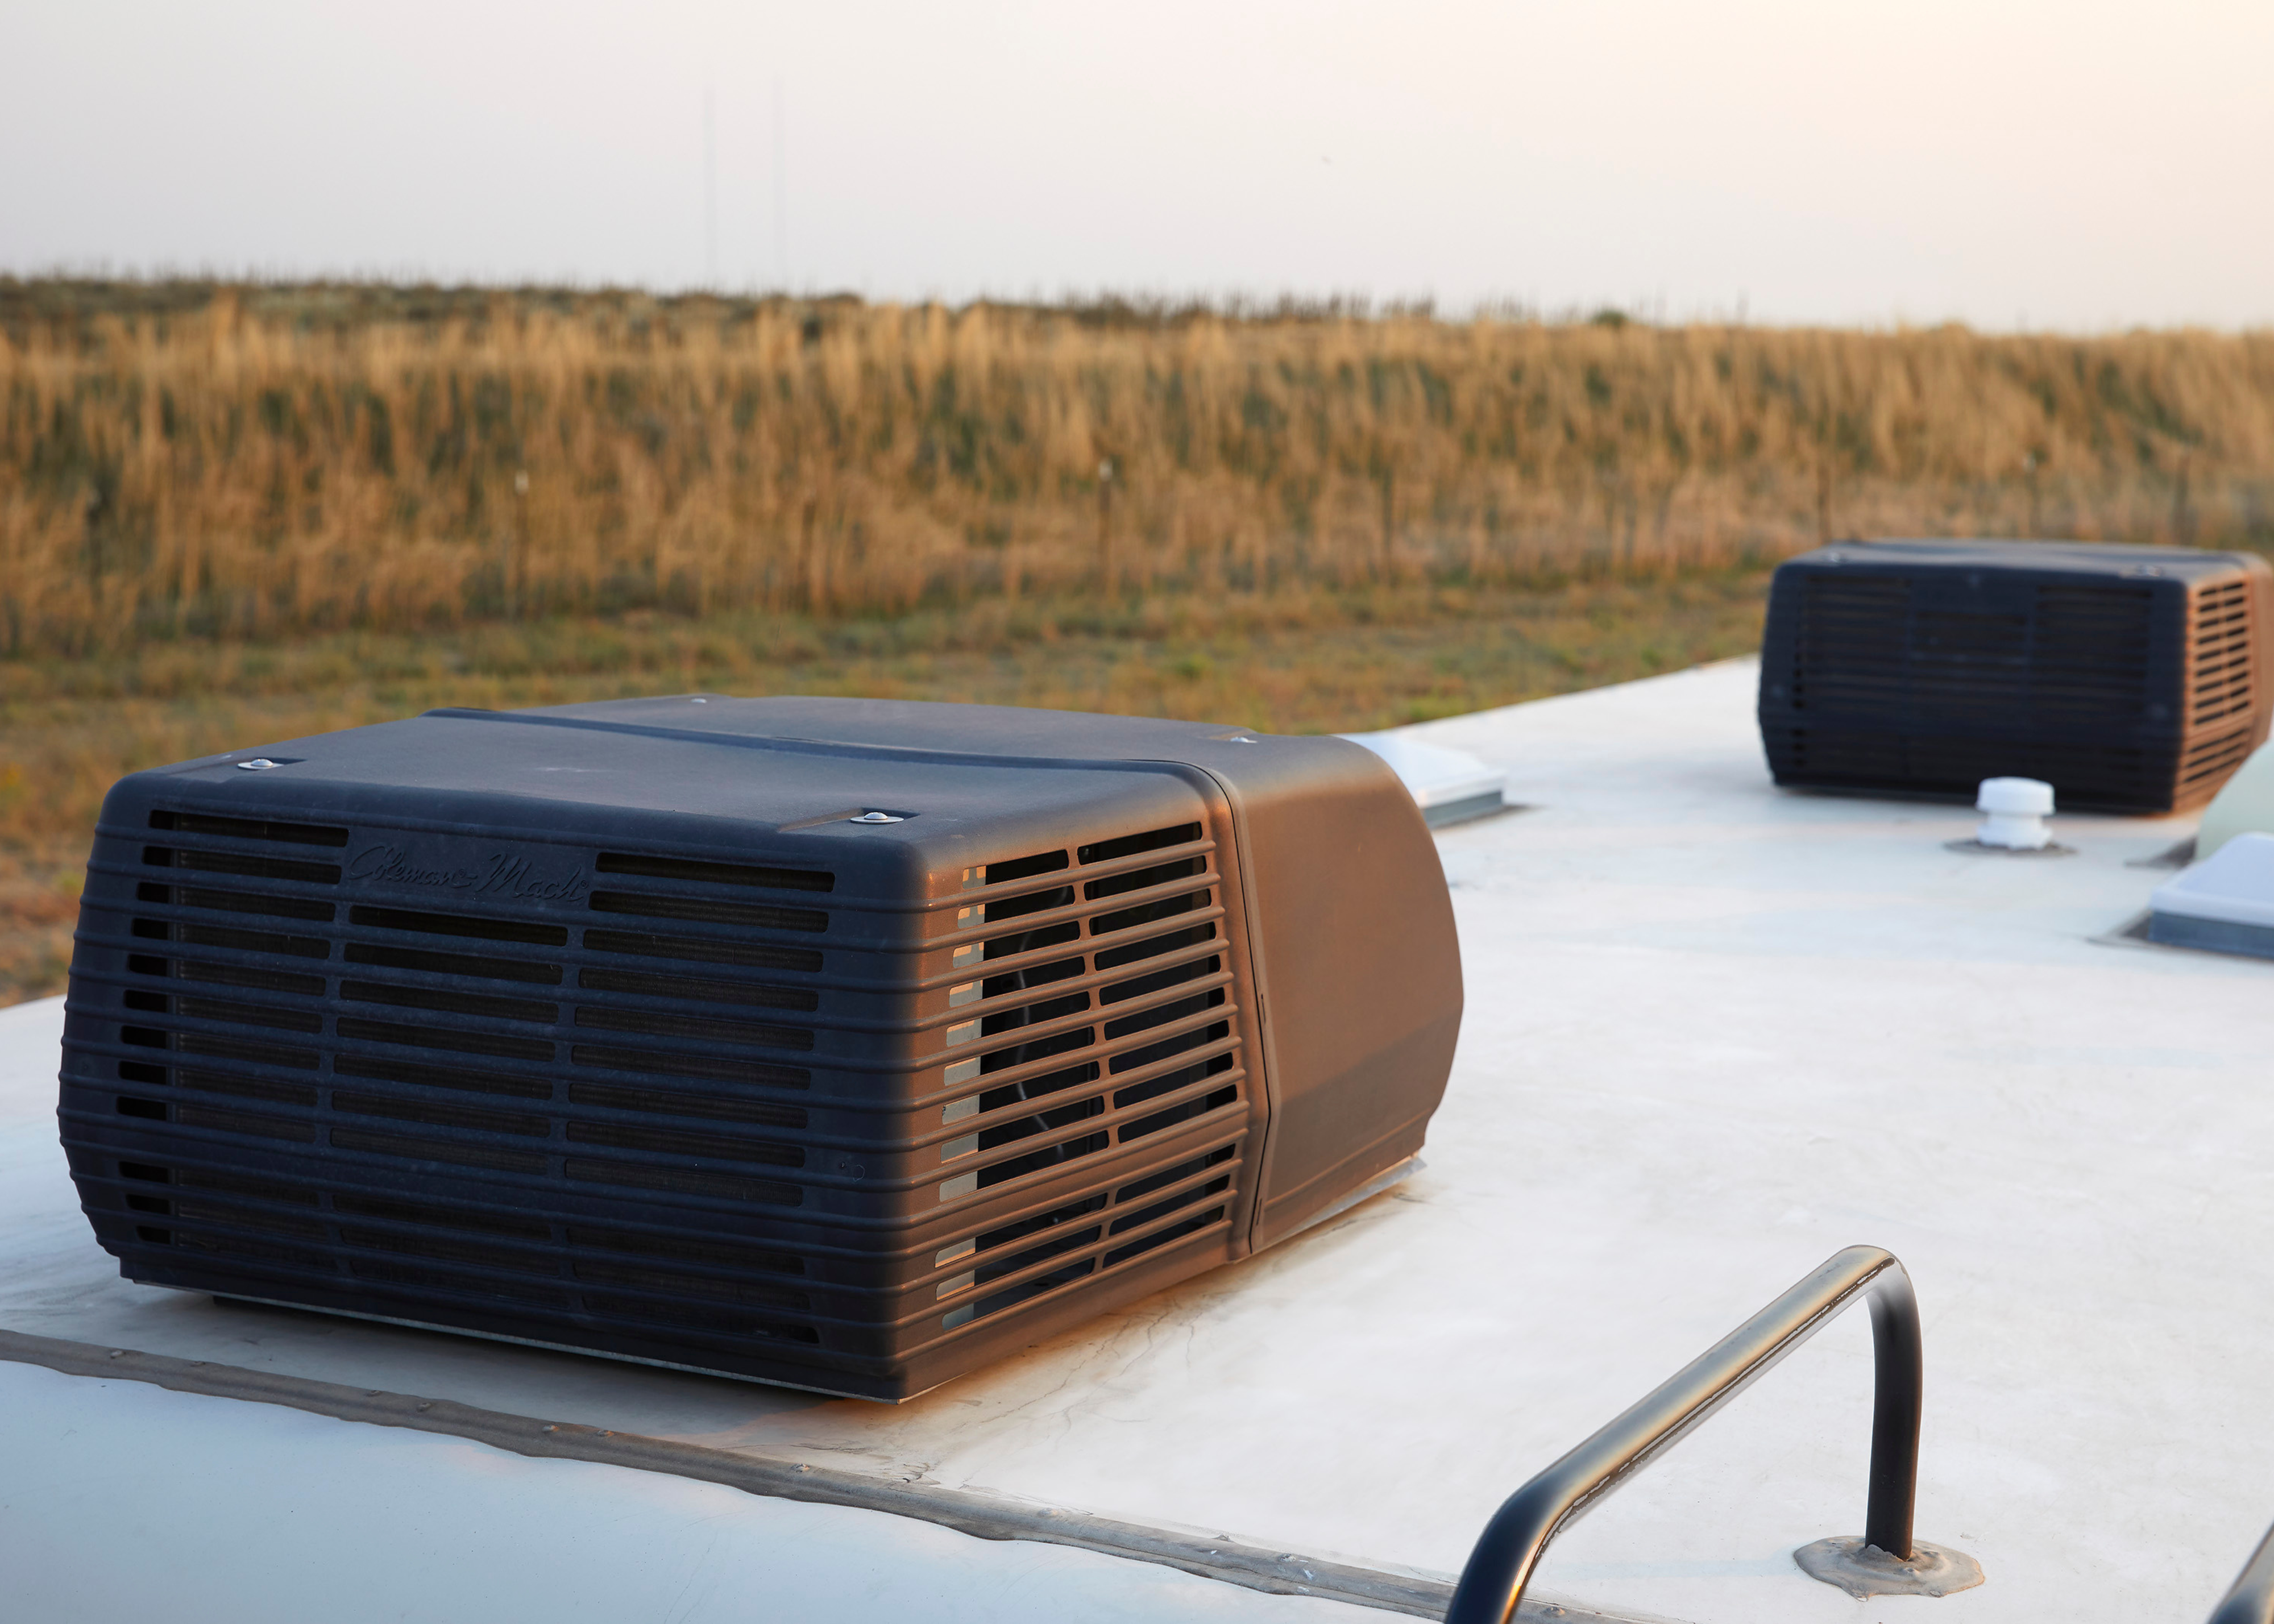 Coleman-Mach Air Conditioner with Soft Start